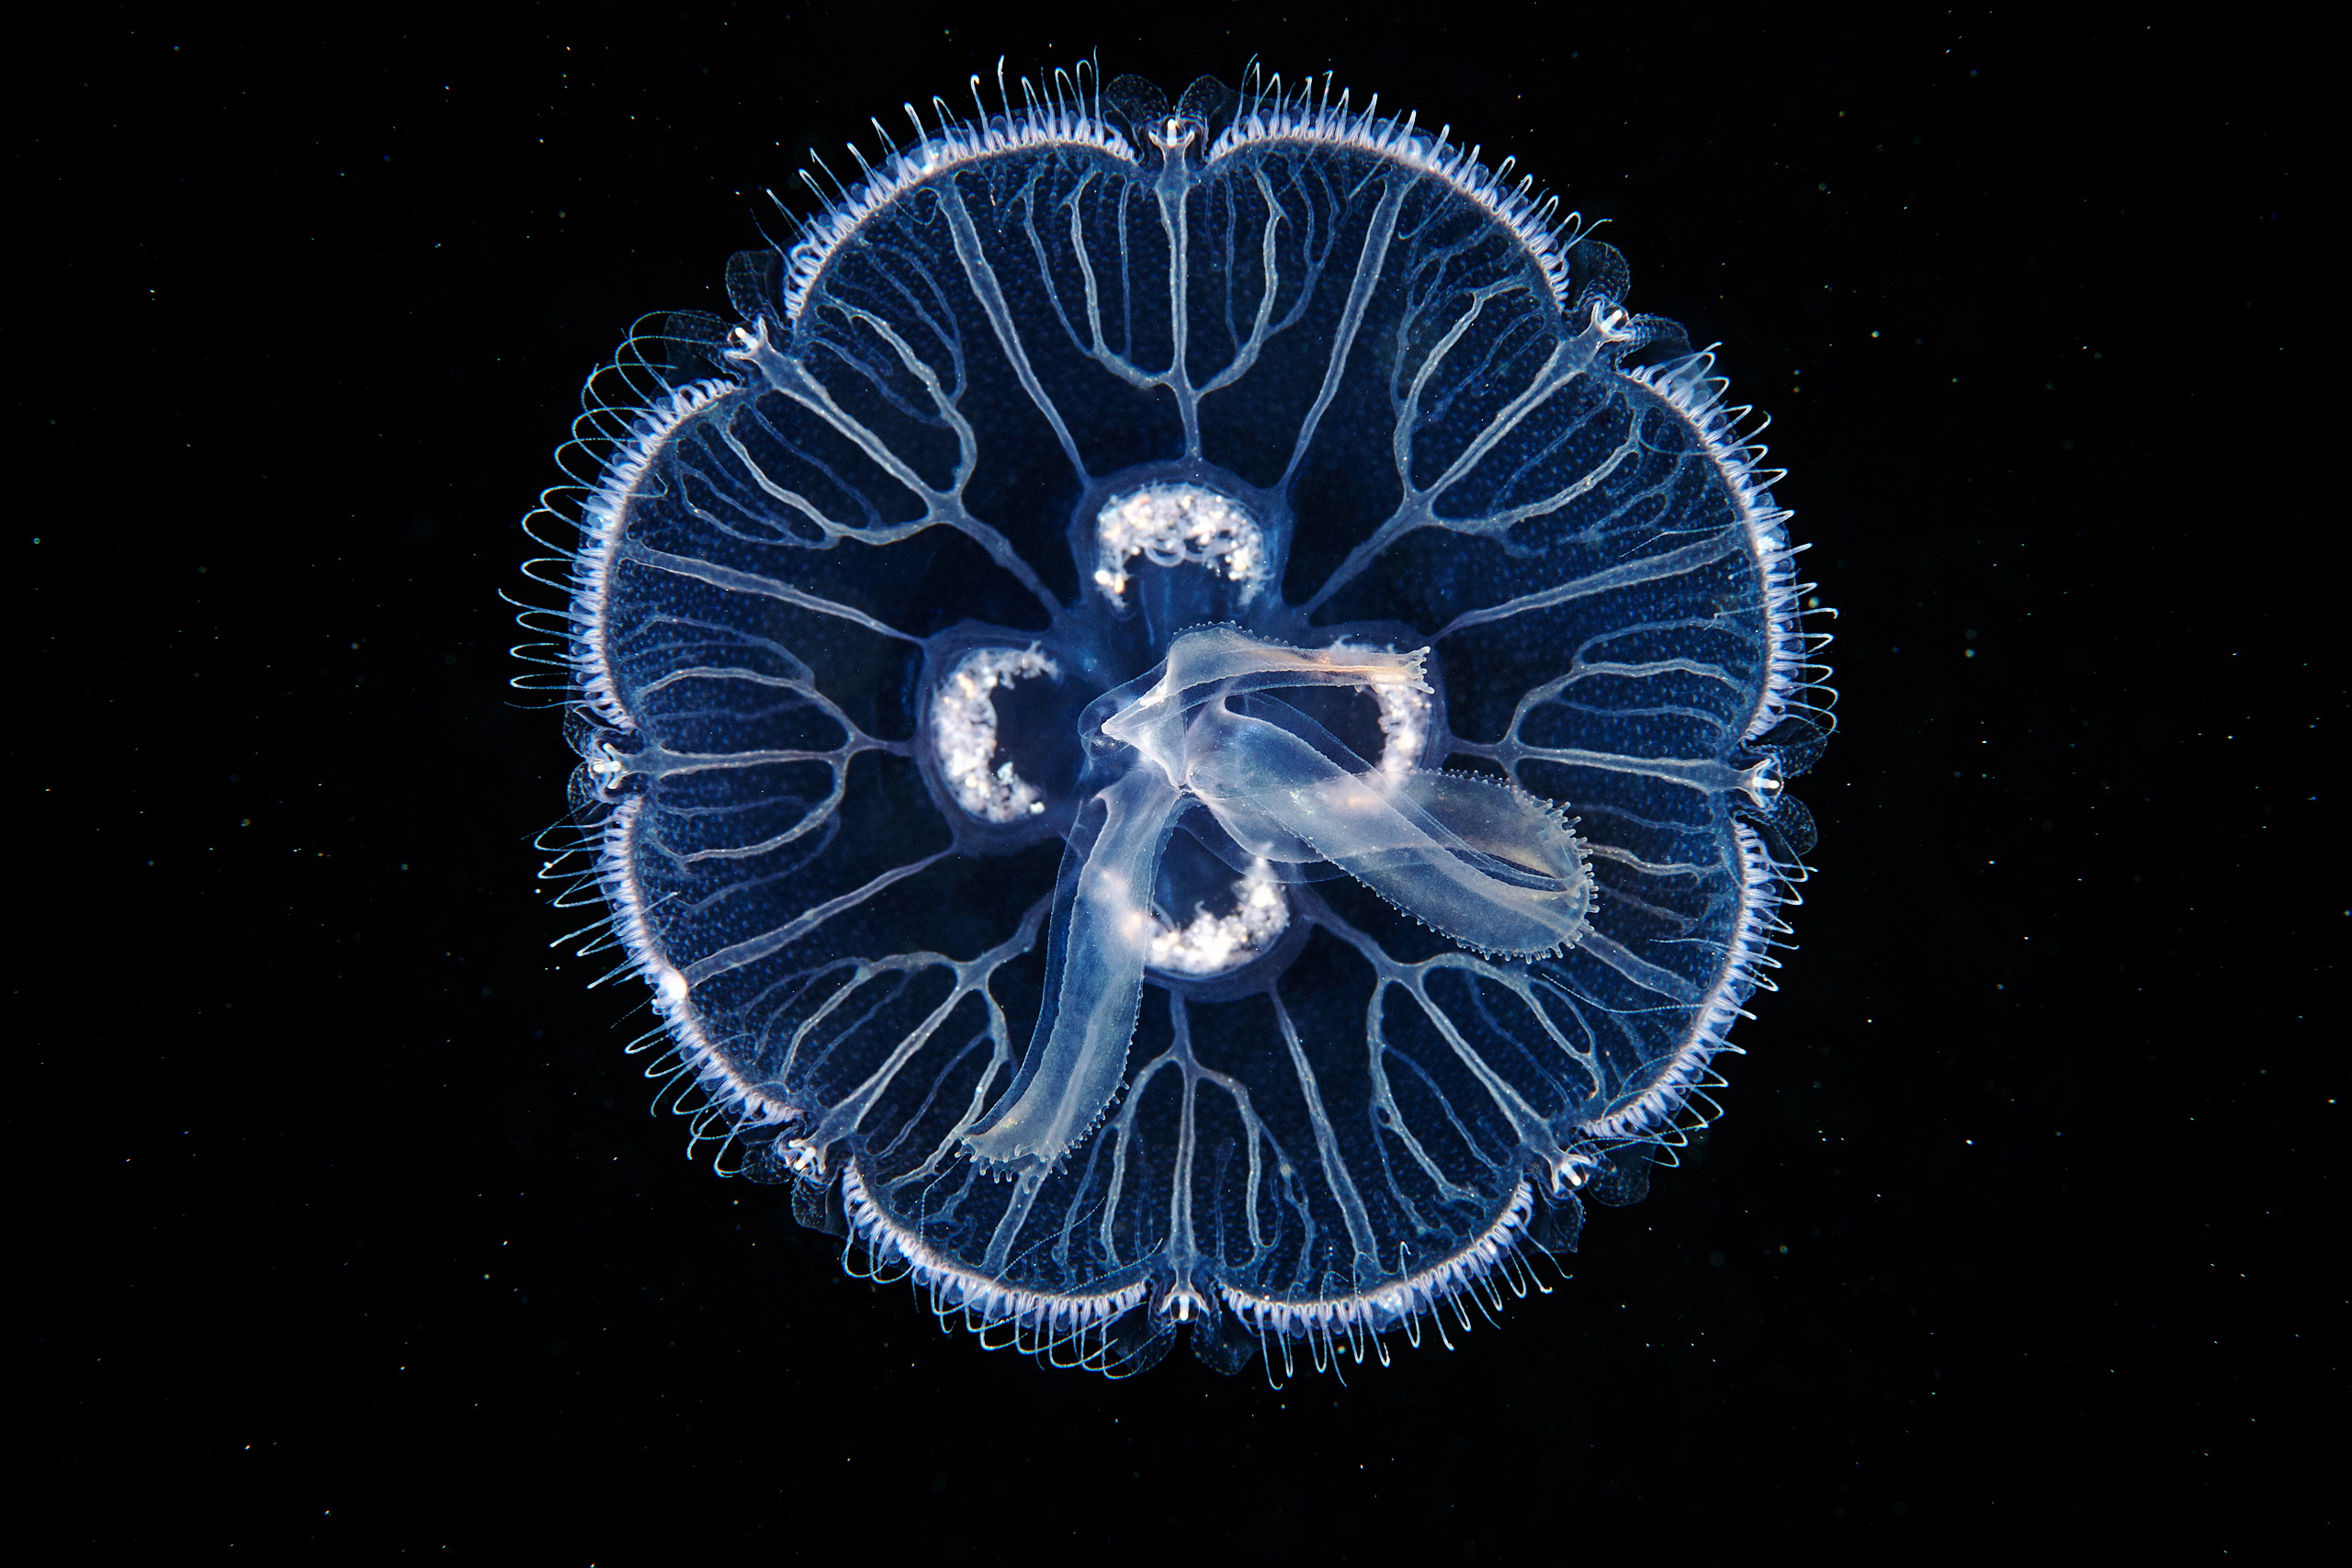 Scyphozoan jellyfish – Moon jellyfish – Aurelia aurita 02